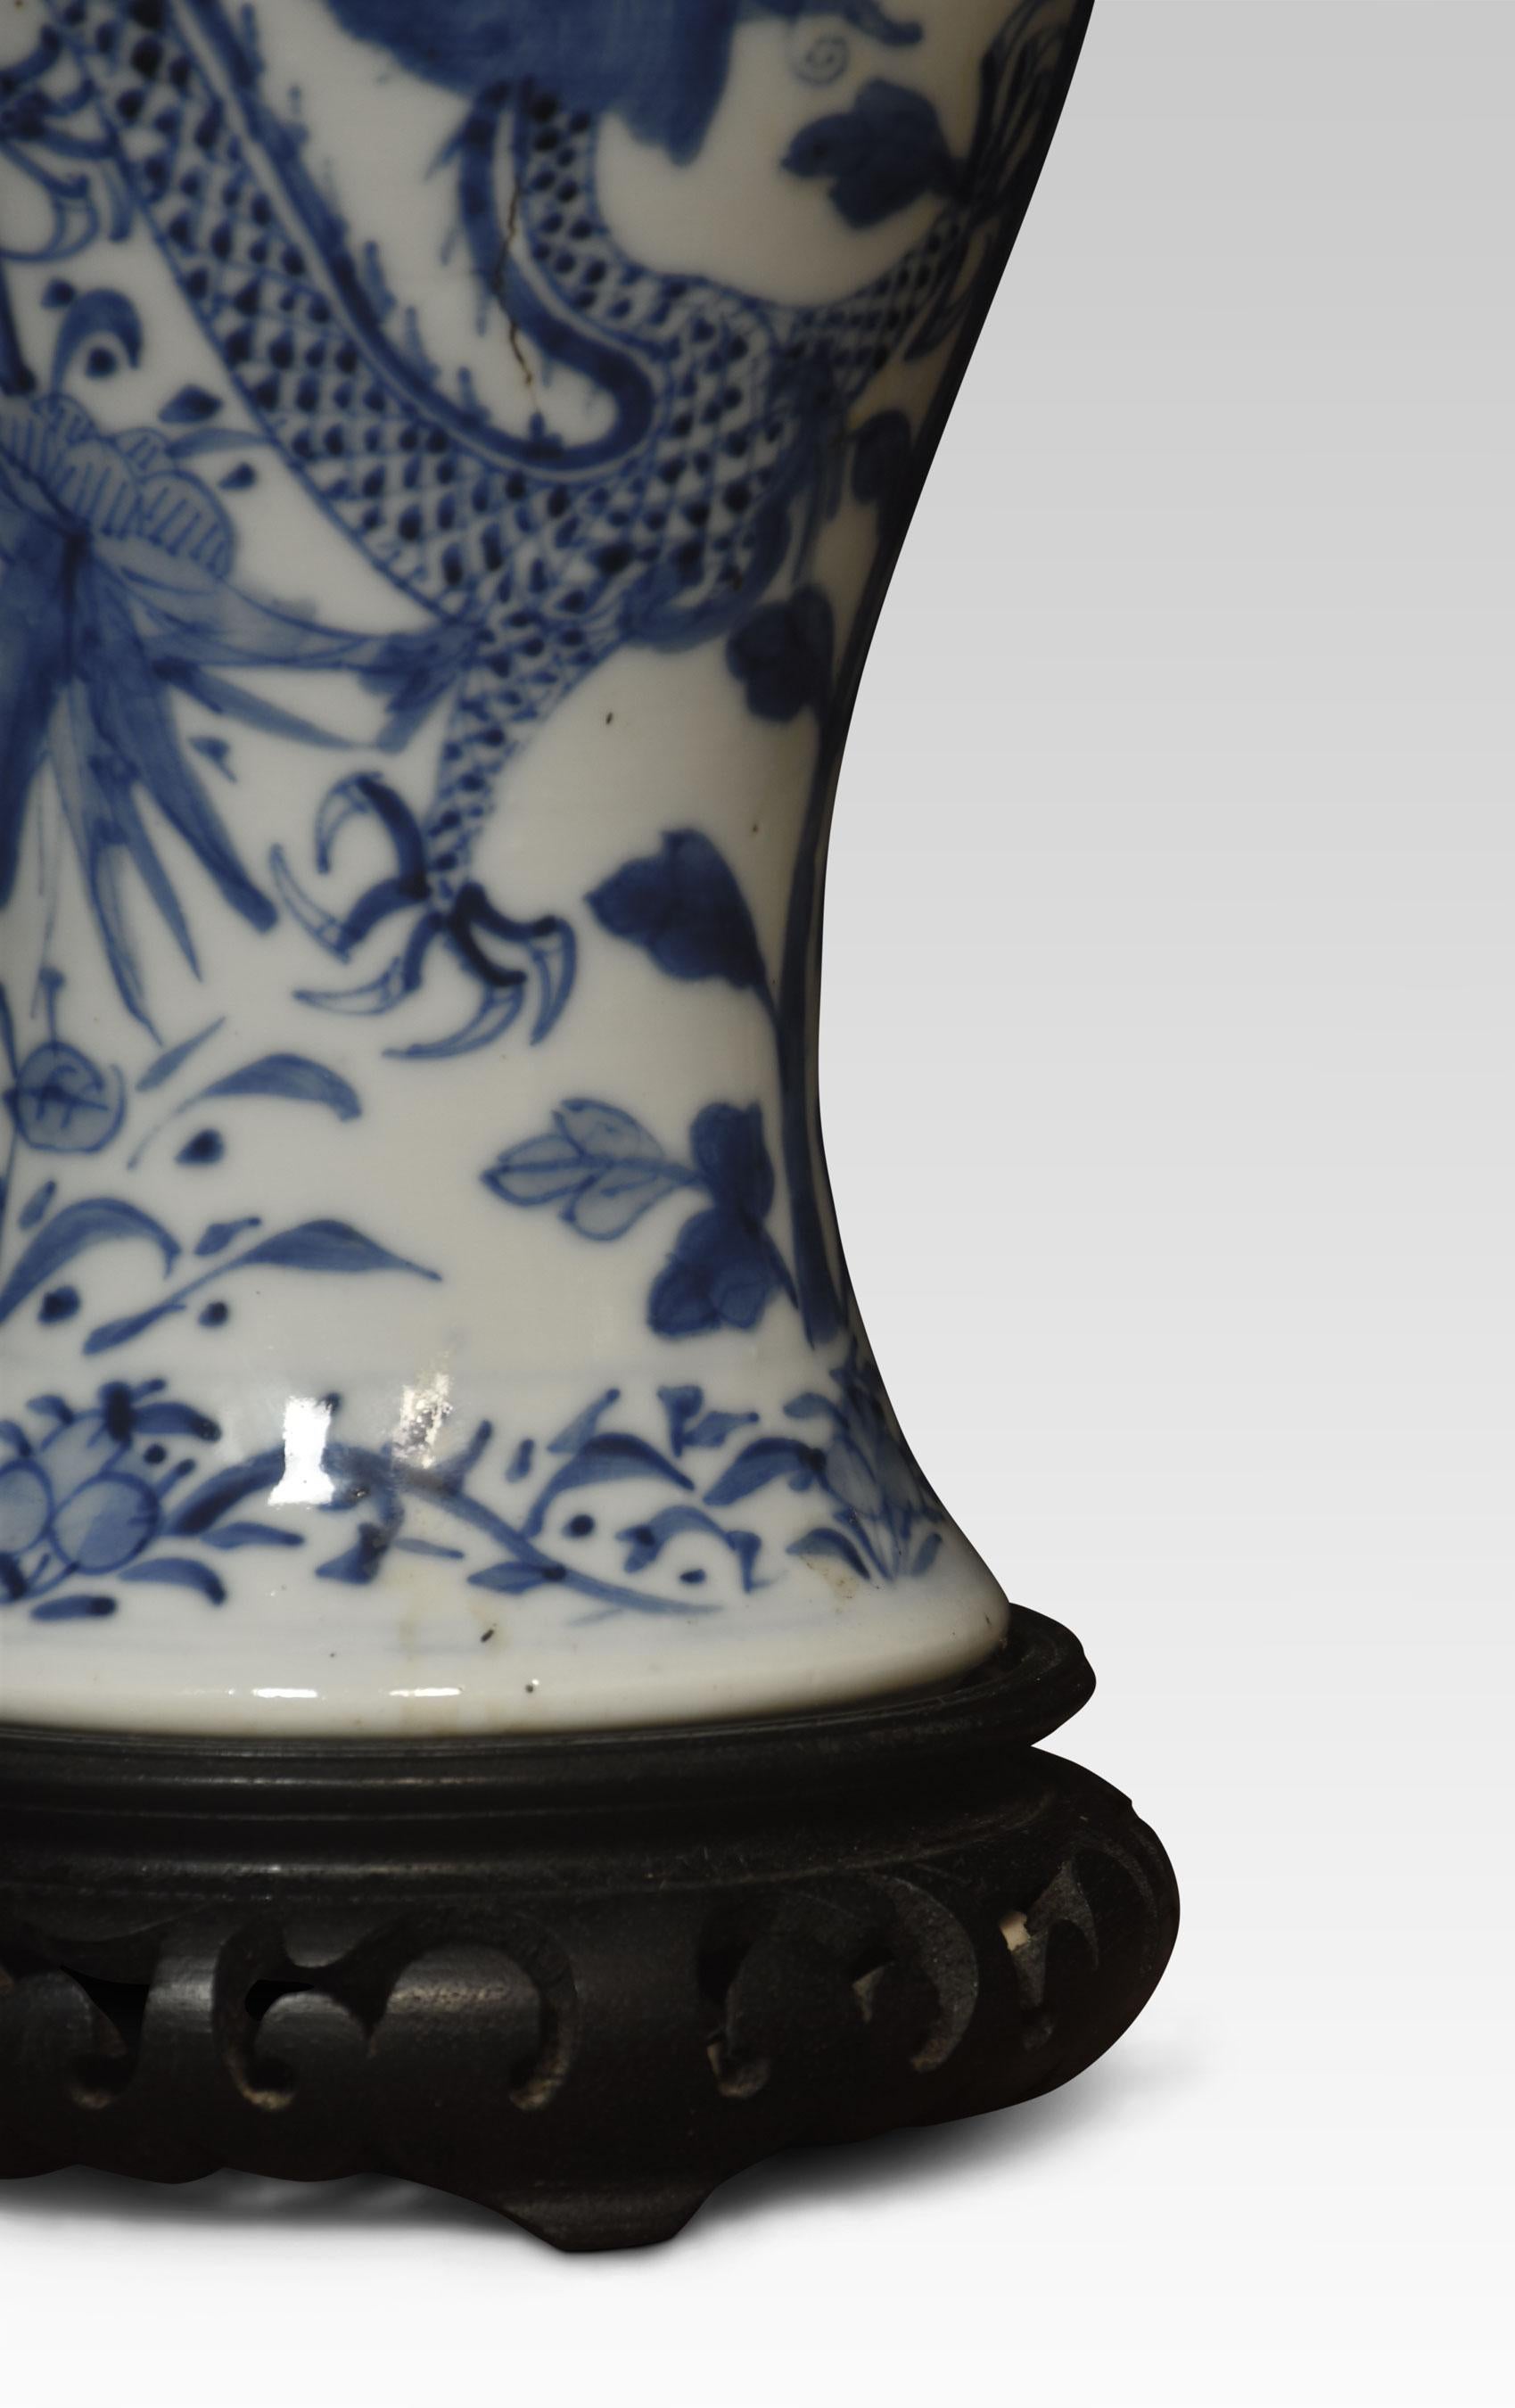 Chinesische blau-weiße Vasenlampe mit orientalischen Drachen und Blattwerk auf durchbrochenem Ebenholzsockel.
Abmessungen:
Höhe 14 Zoll
Breite 5 Zoll
Tiefe 5 Zoll.